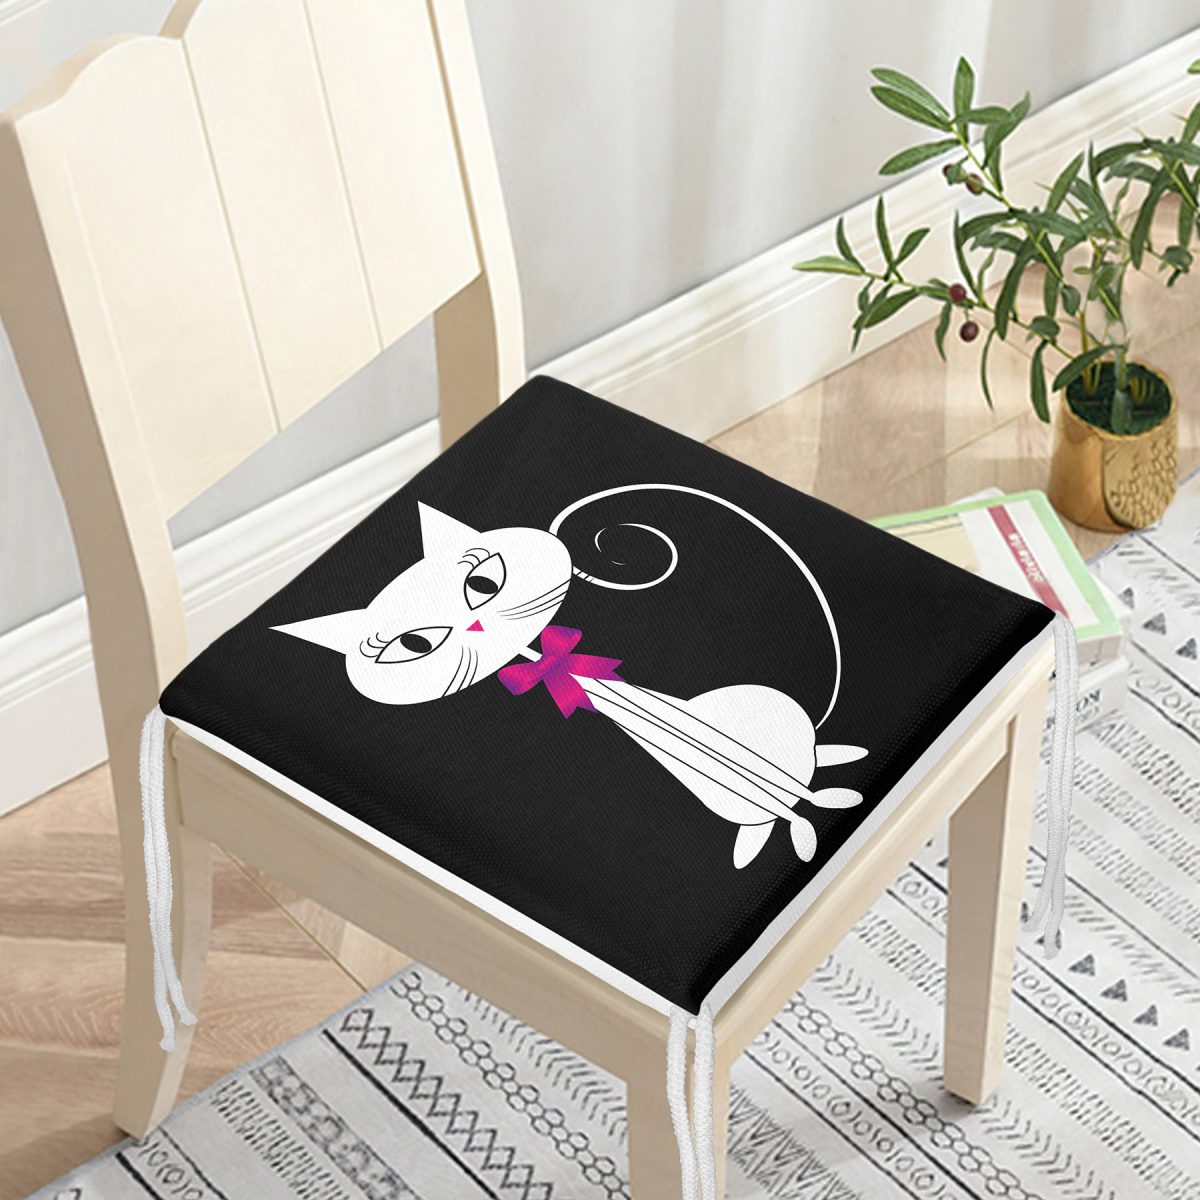 Siyah Zeminde Sevimli Beyaz Kedicik Özel Tasarımlı Fermuarlı Sandalye Minderi Realhomes